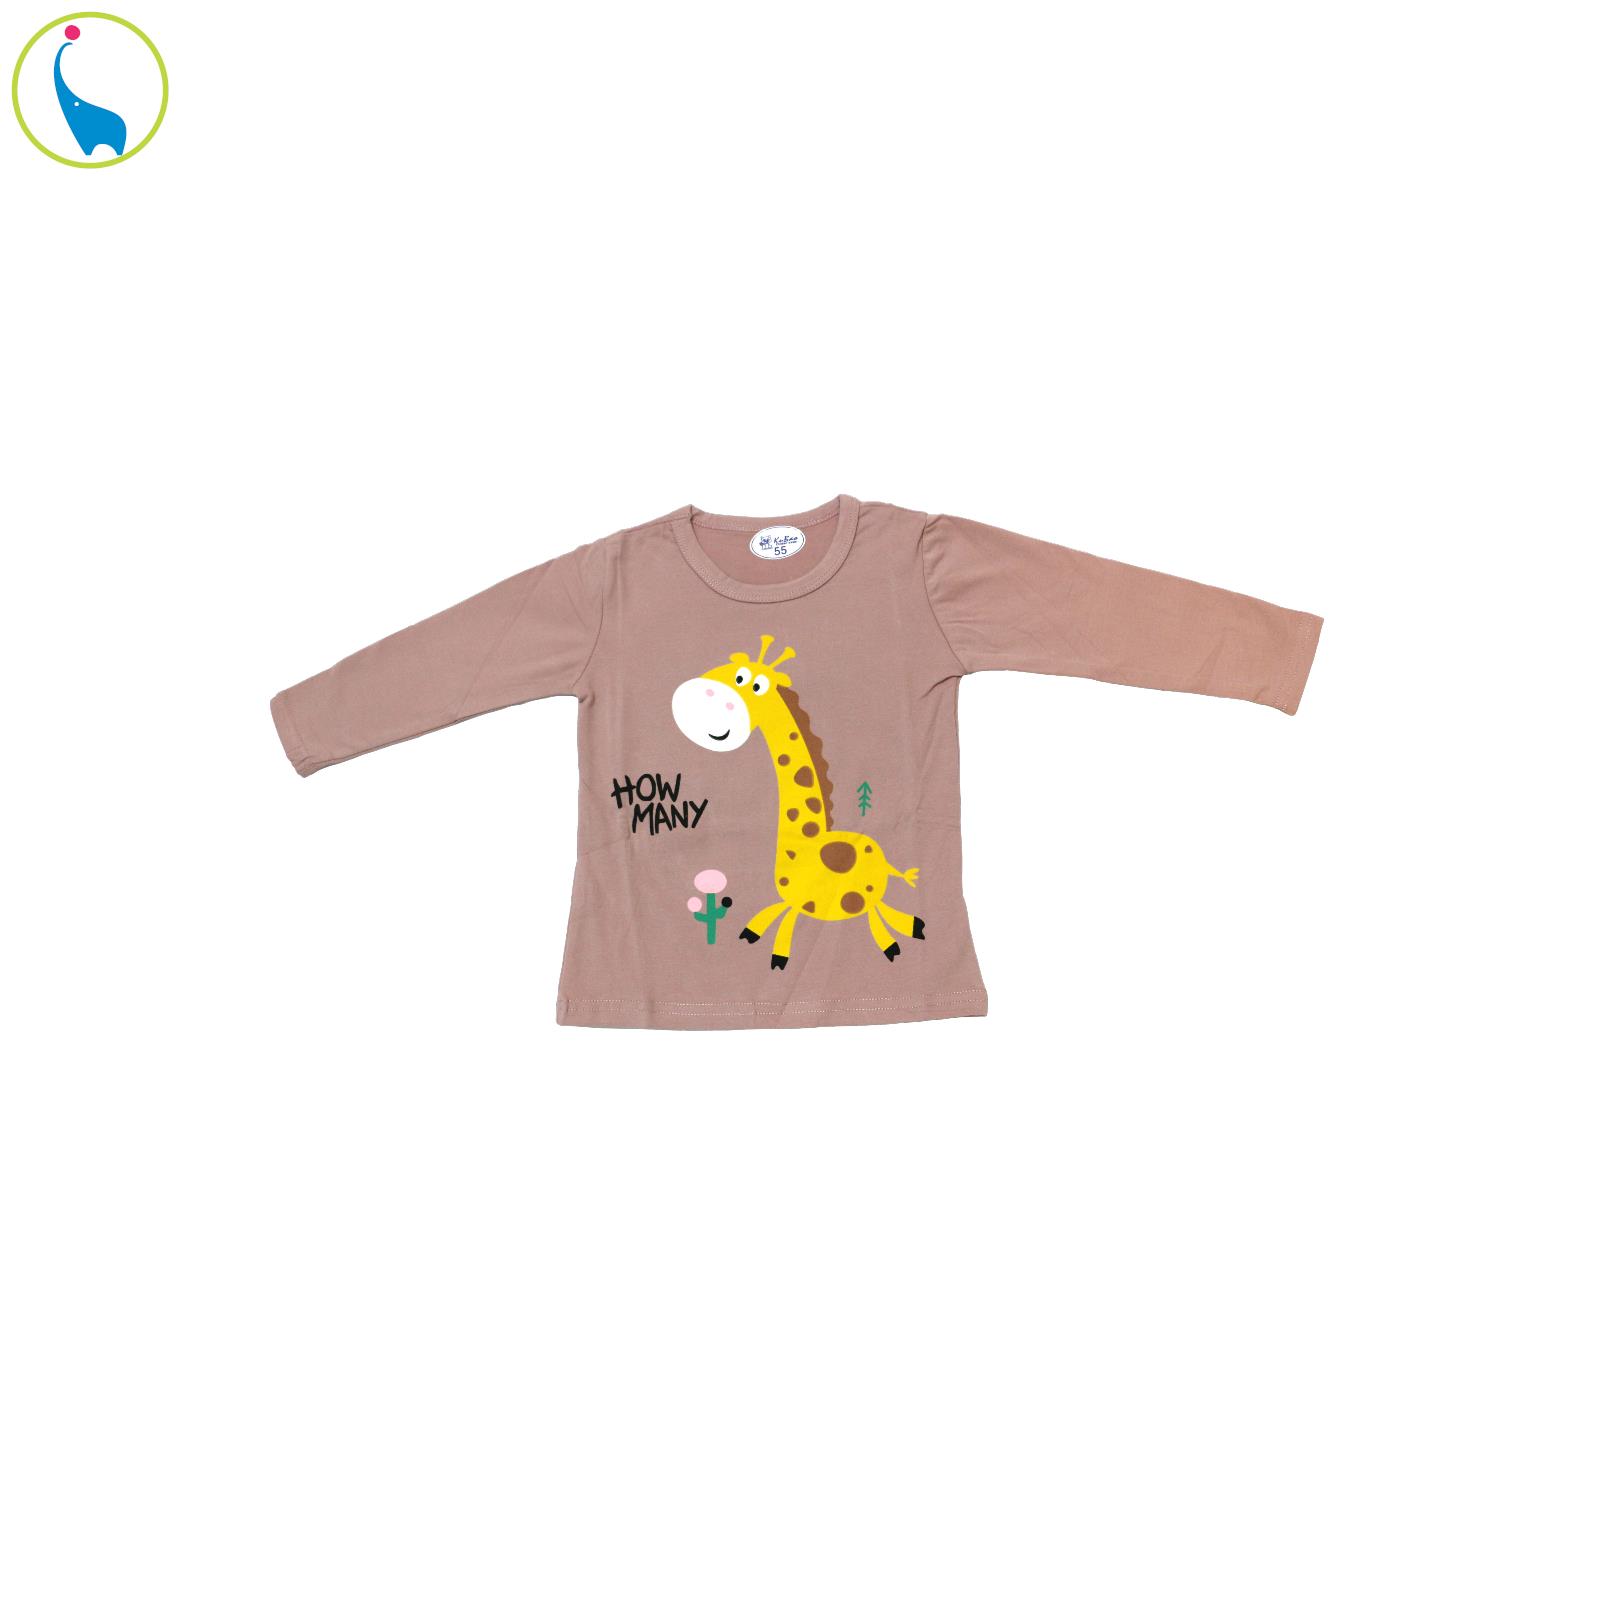 ست تی شرت و شلوار دخترانه مدل giraffe کد 1029